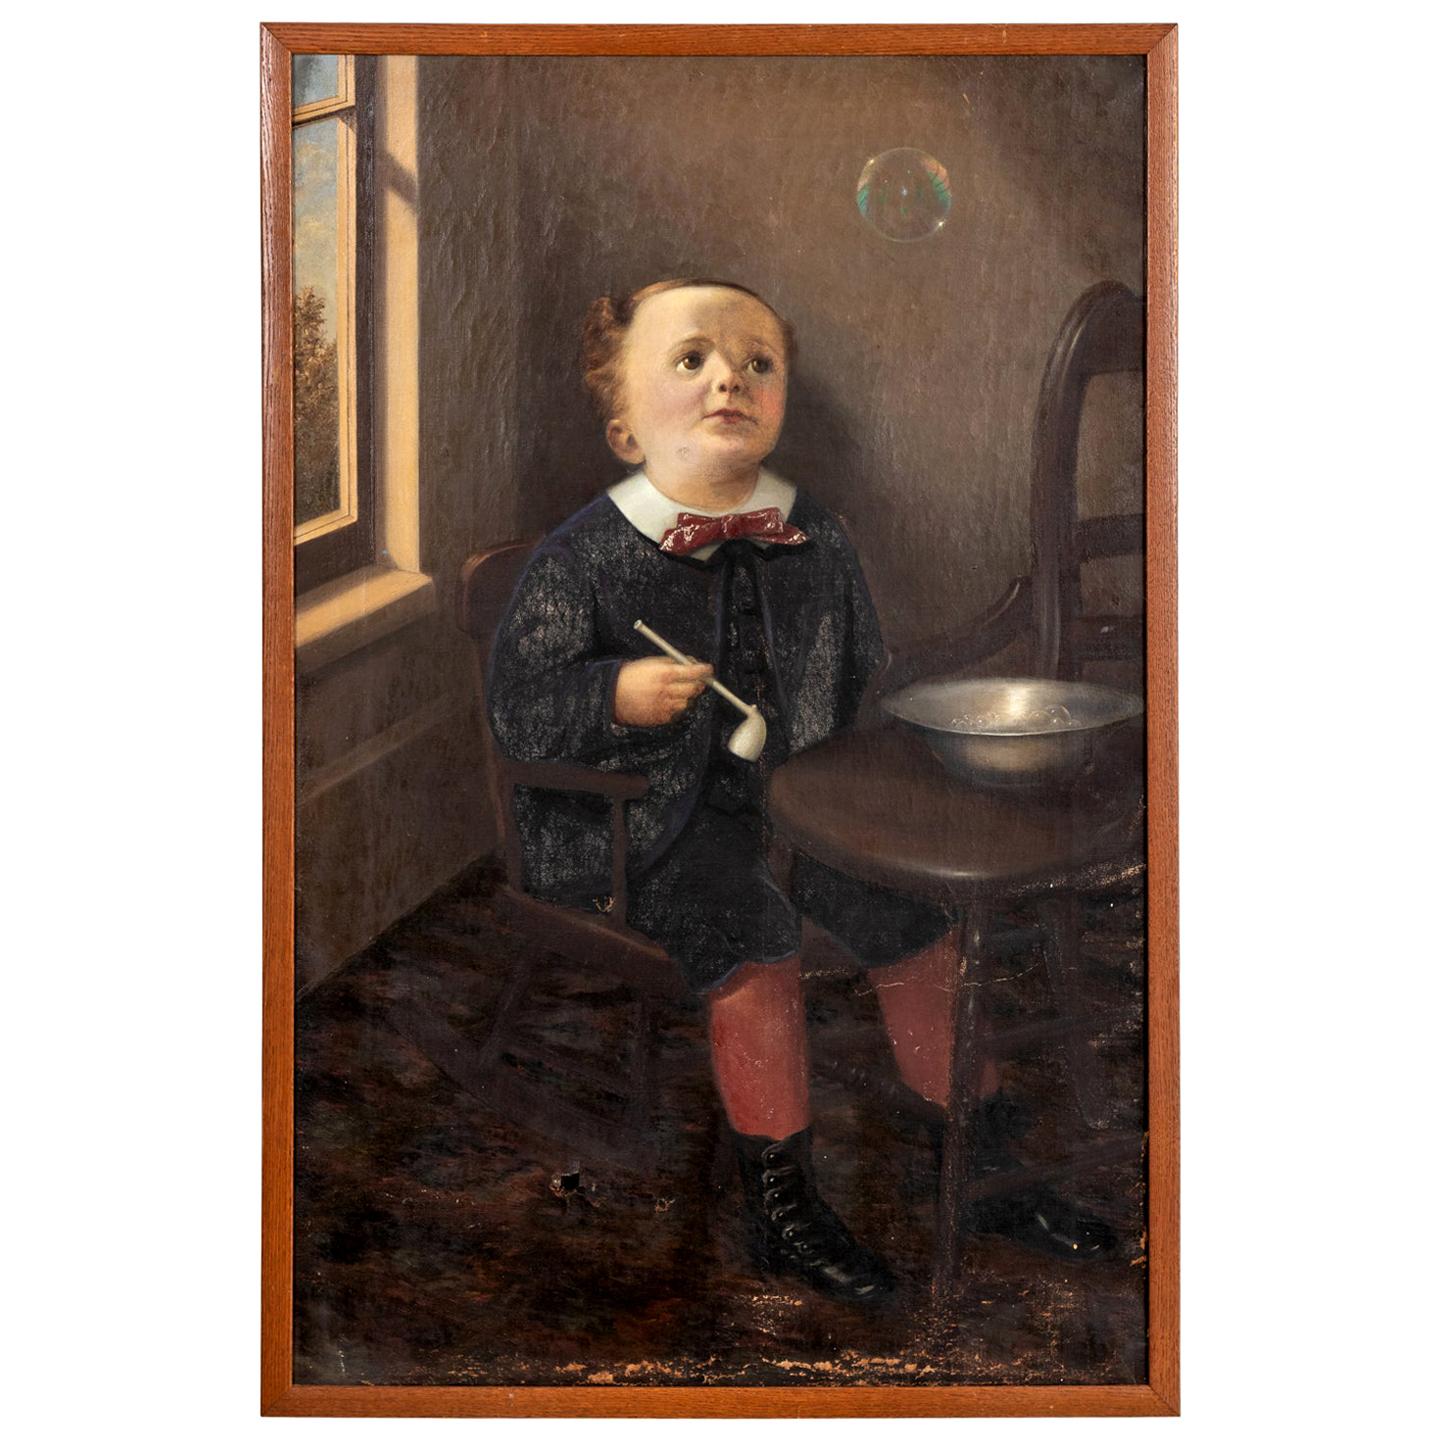 Portrait of a Boy Blowing Bubbles